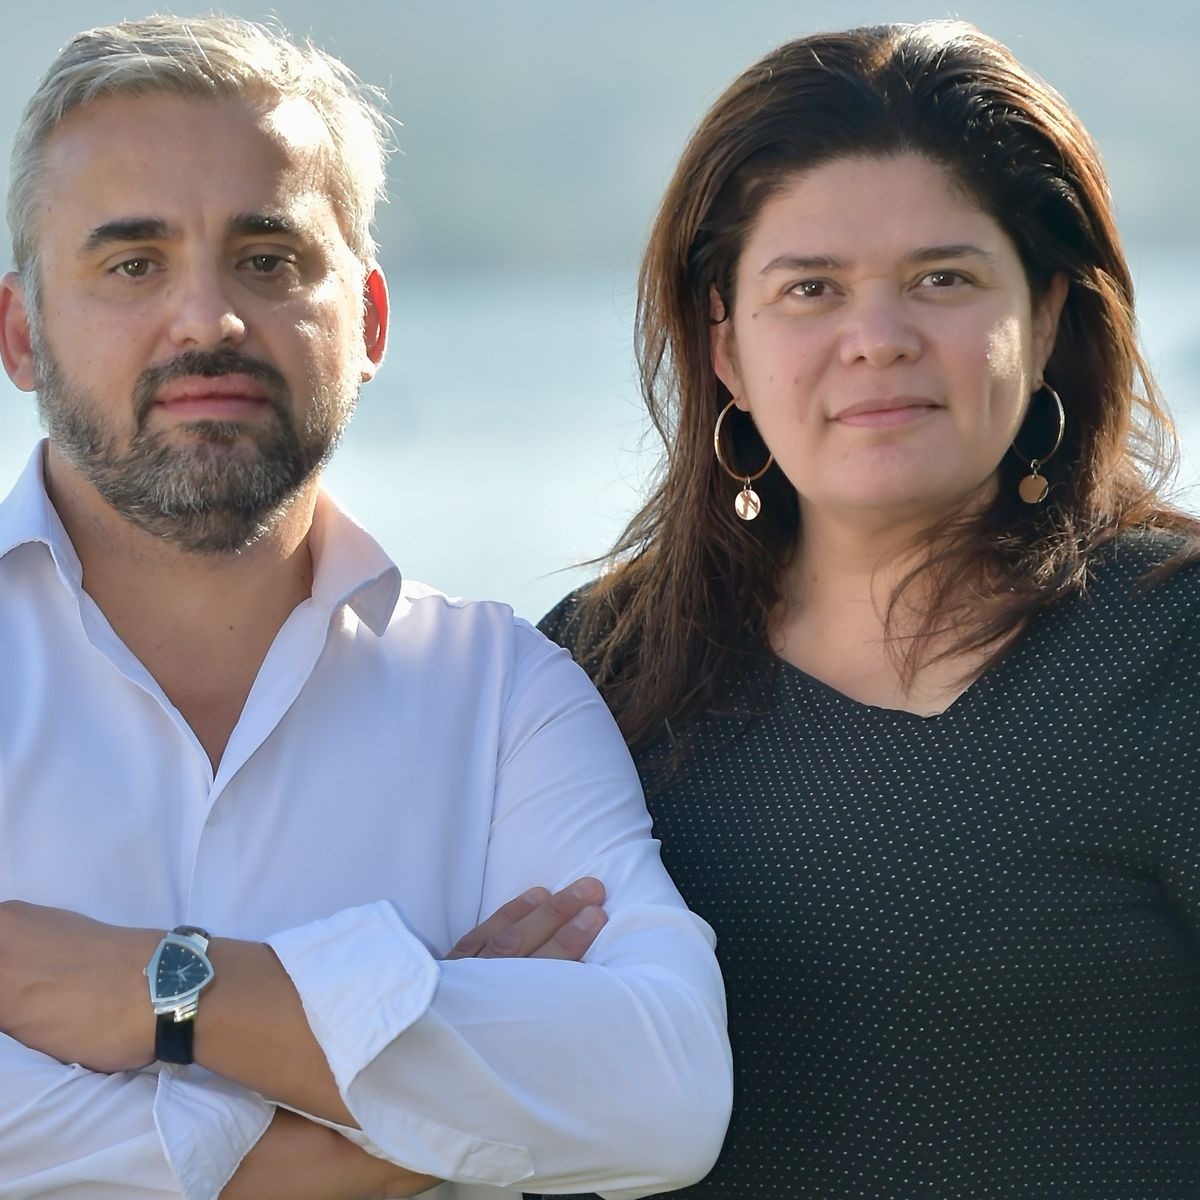 "Je suis antisémite" : la fille des députés Raquel Garrido et Alexis Corbière en garde à vue